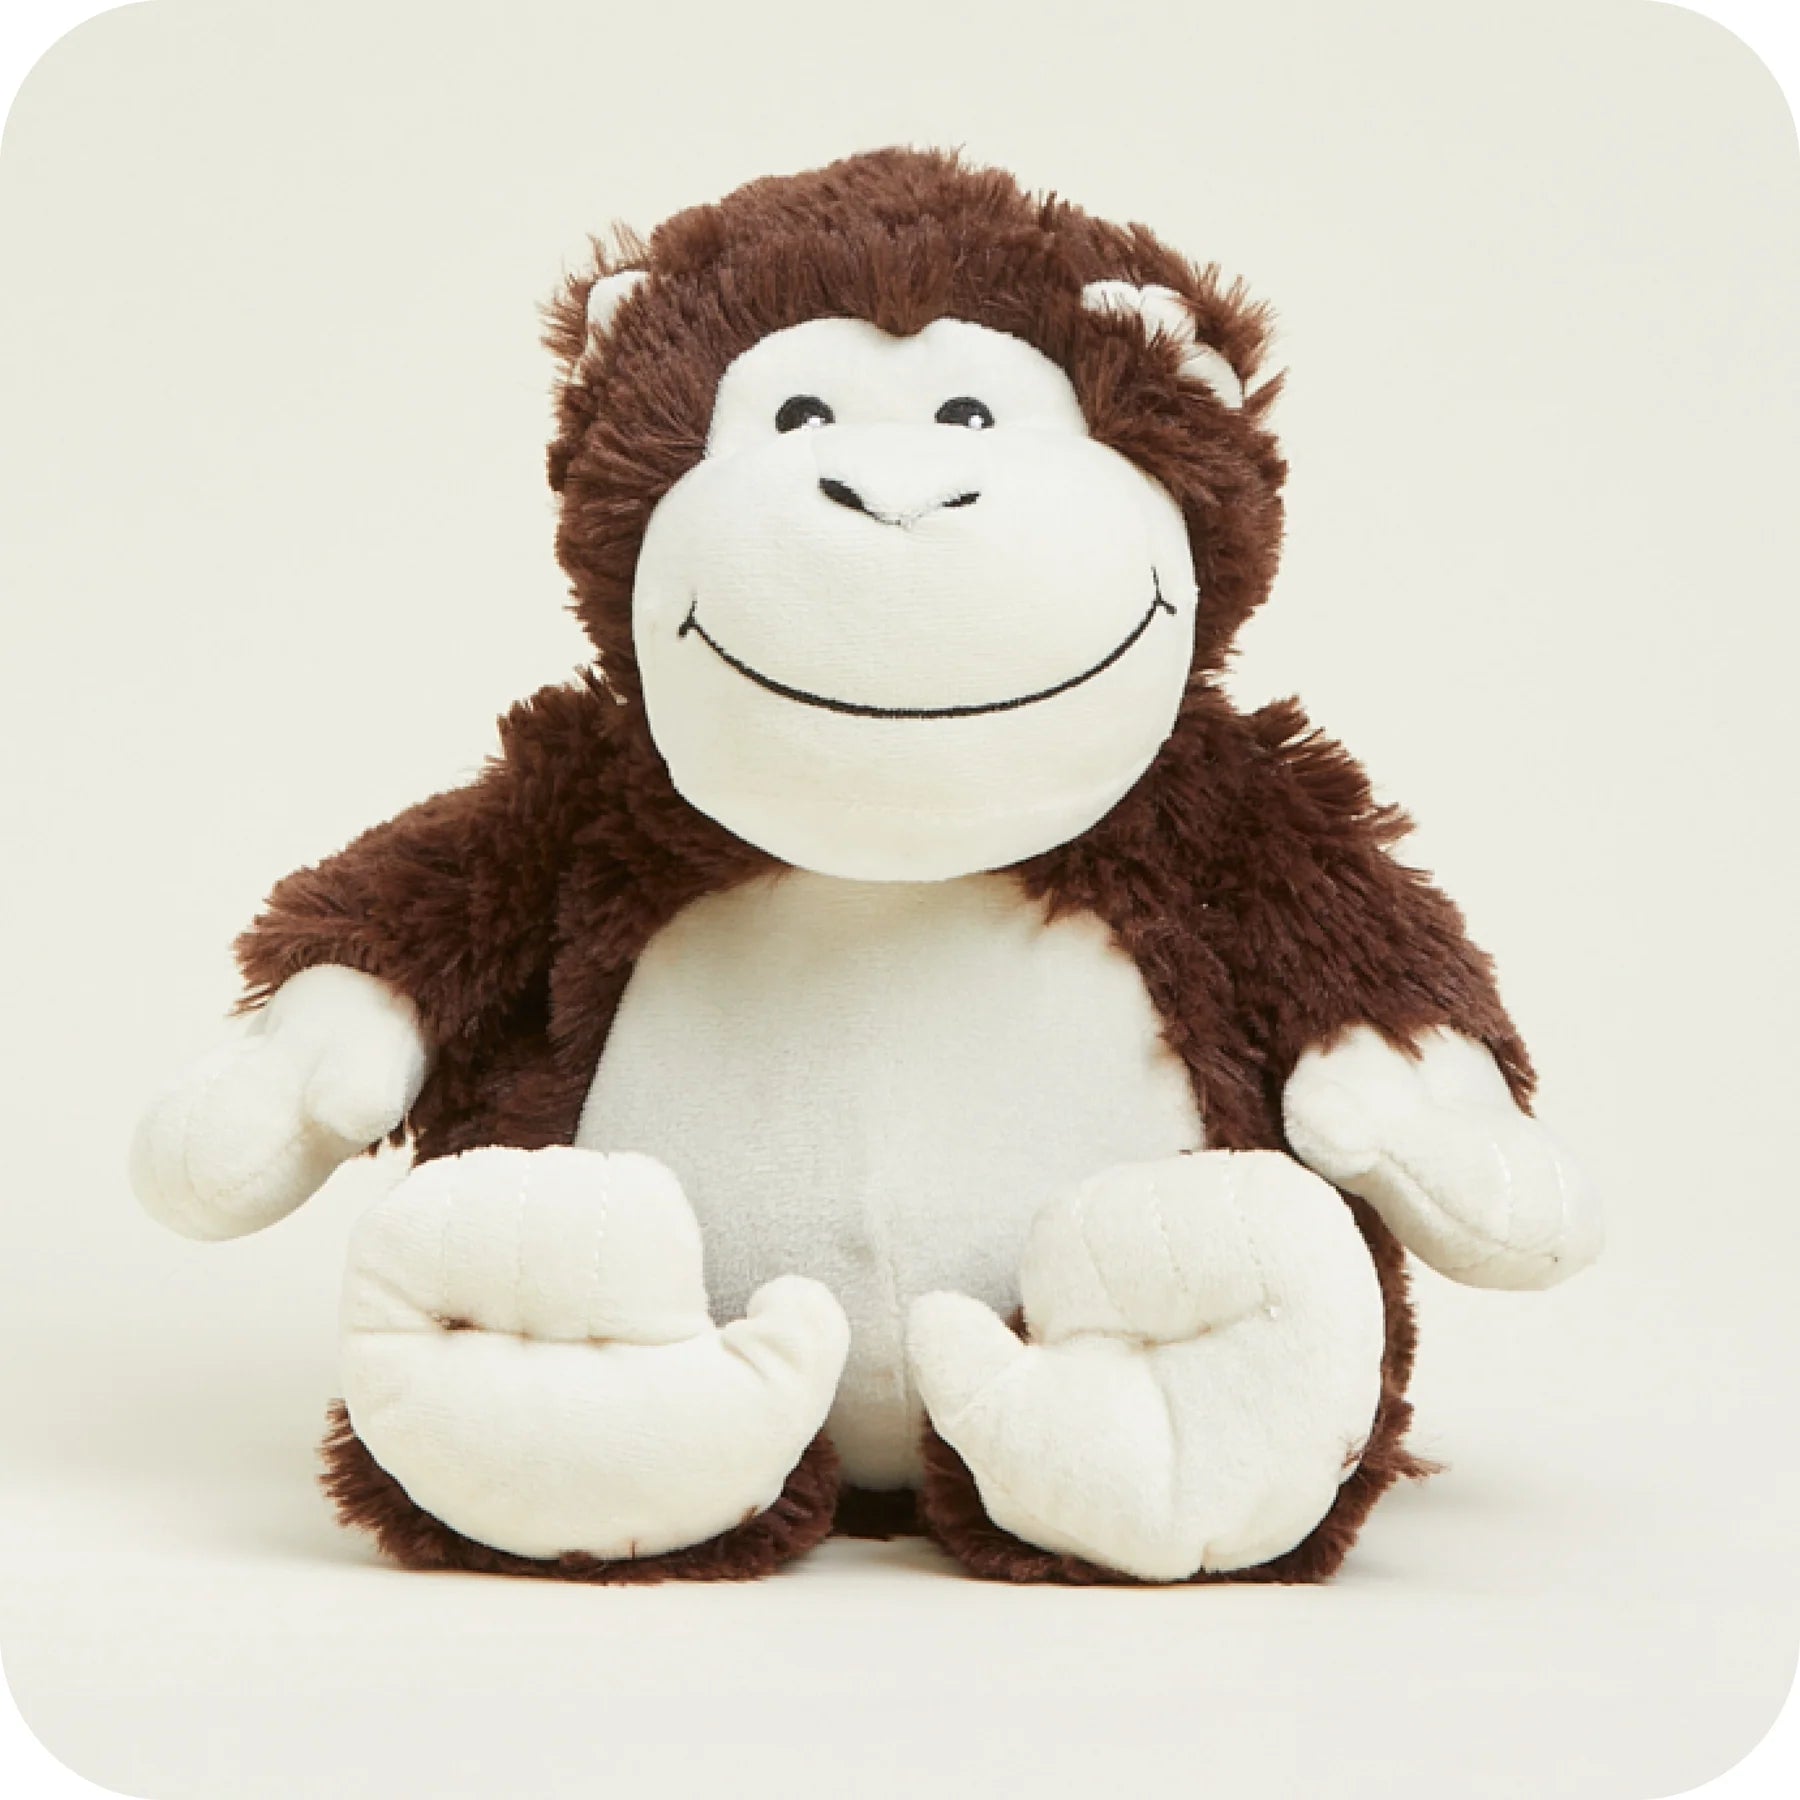 Warmies Plush Monkey, Personal Care